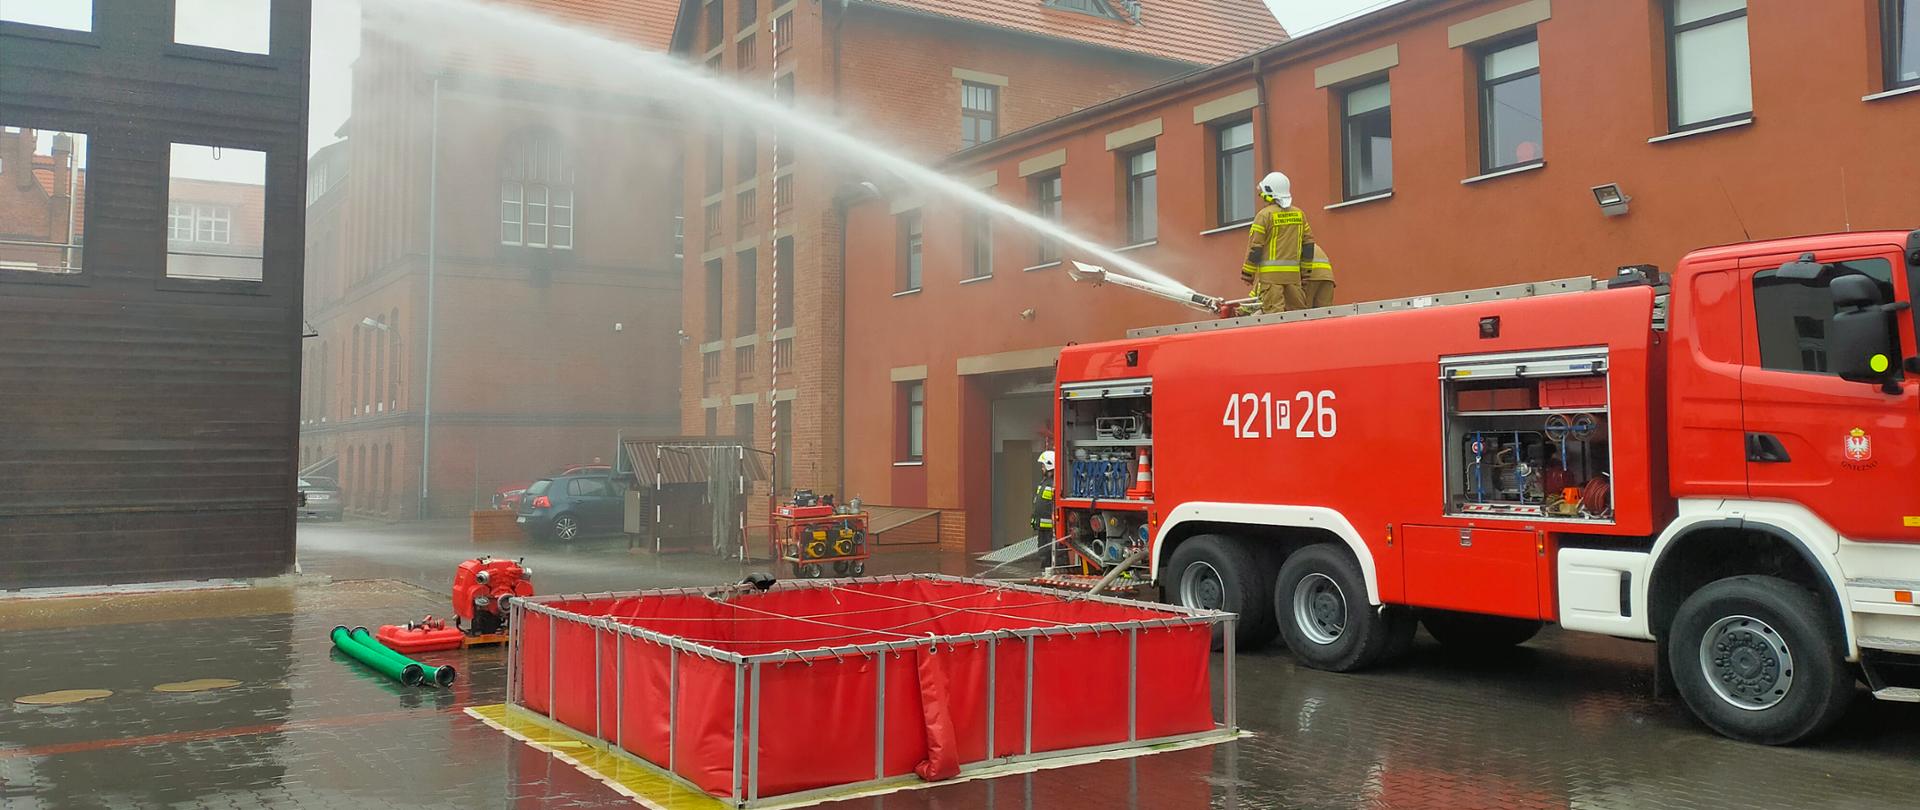 Na zdjęciu widać samochód pożarniczy z którego podawana jest woda z działka. Przy samochodzie rozłożony jest zbiornik wodny